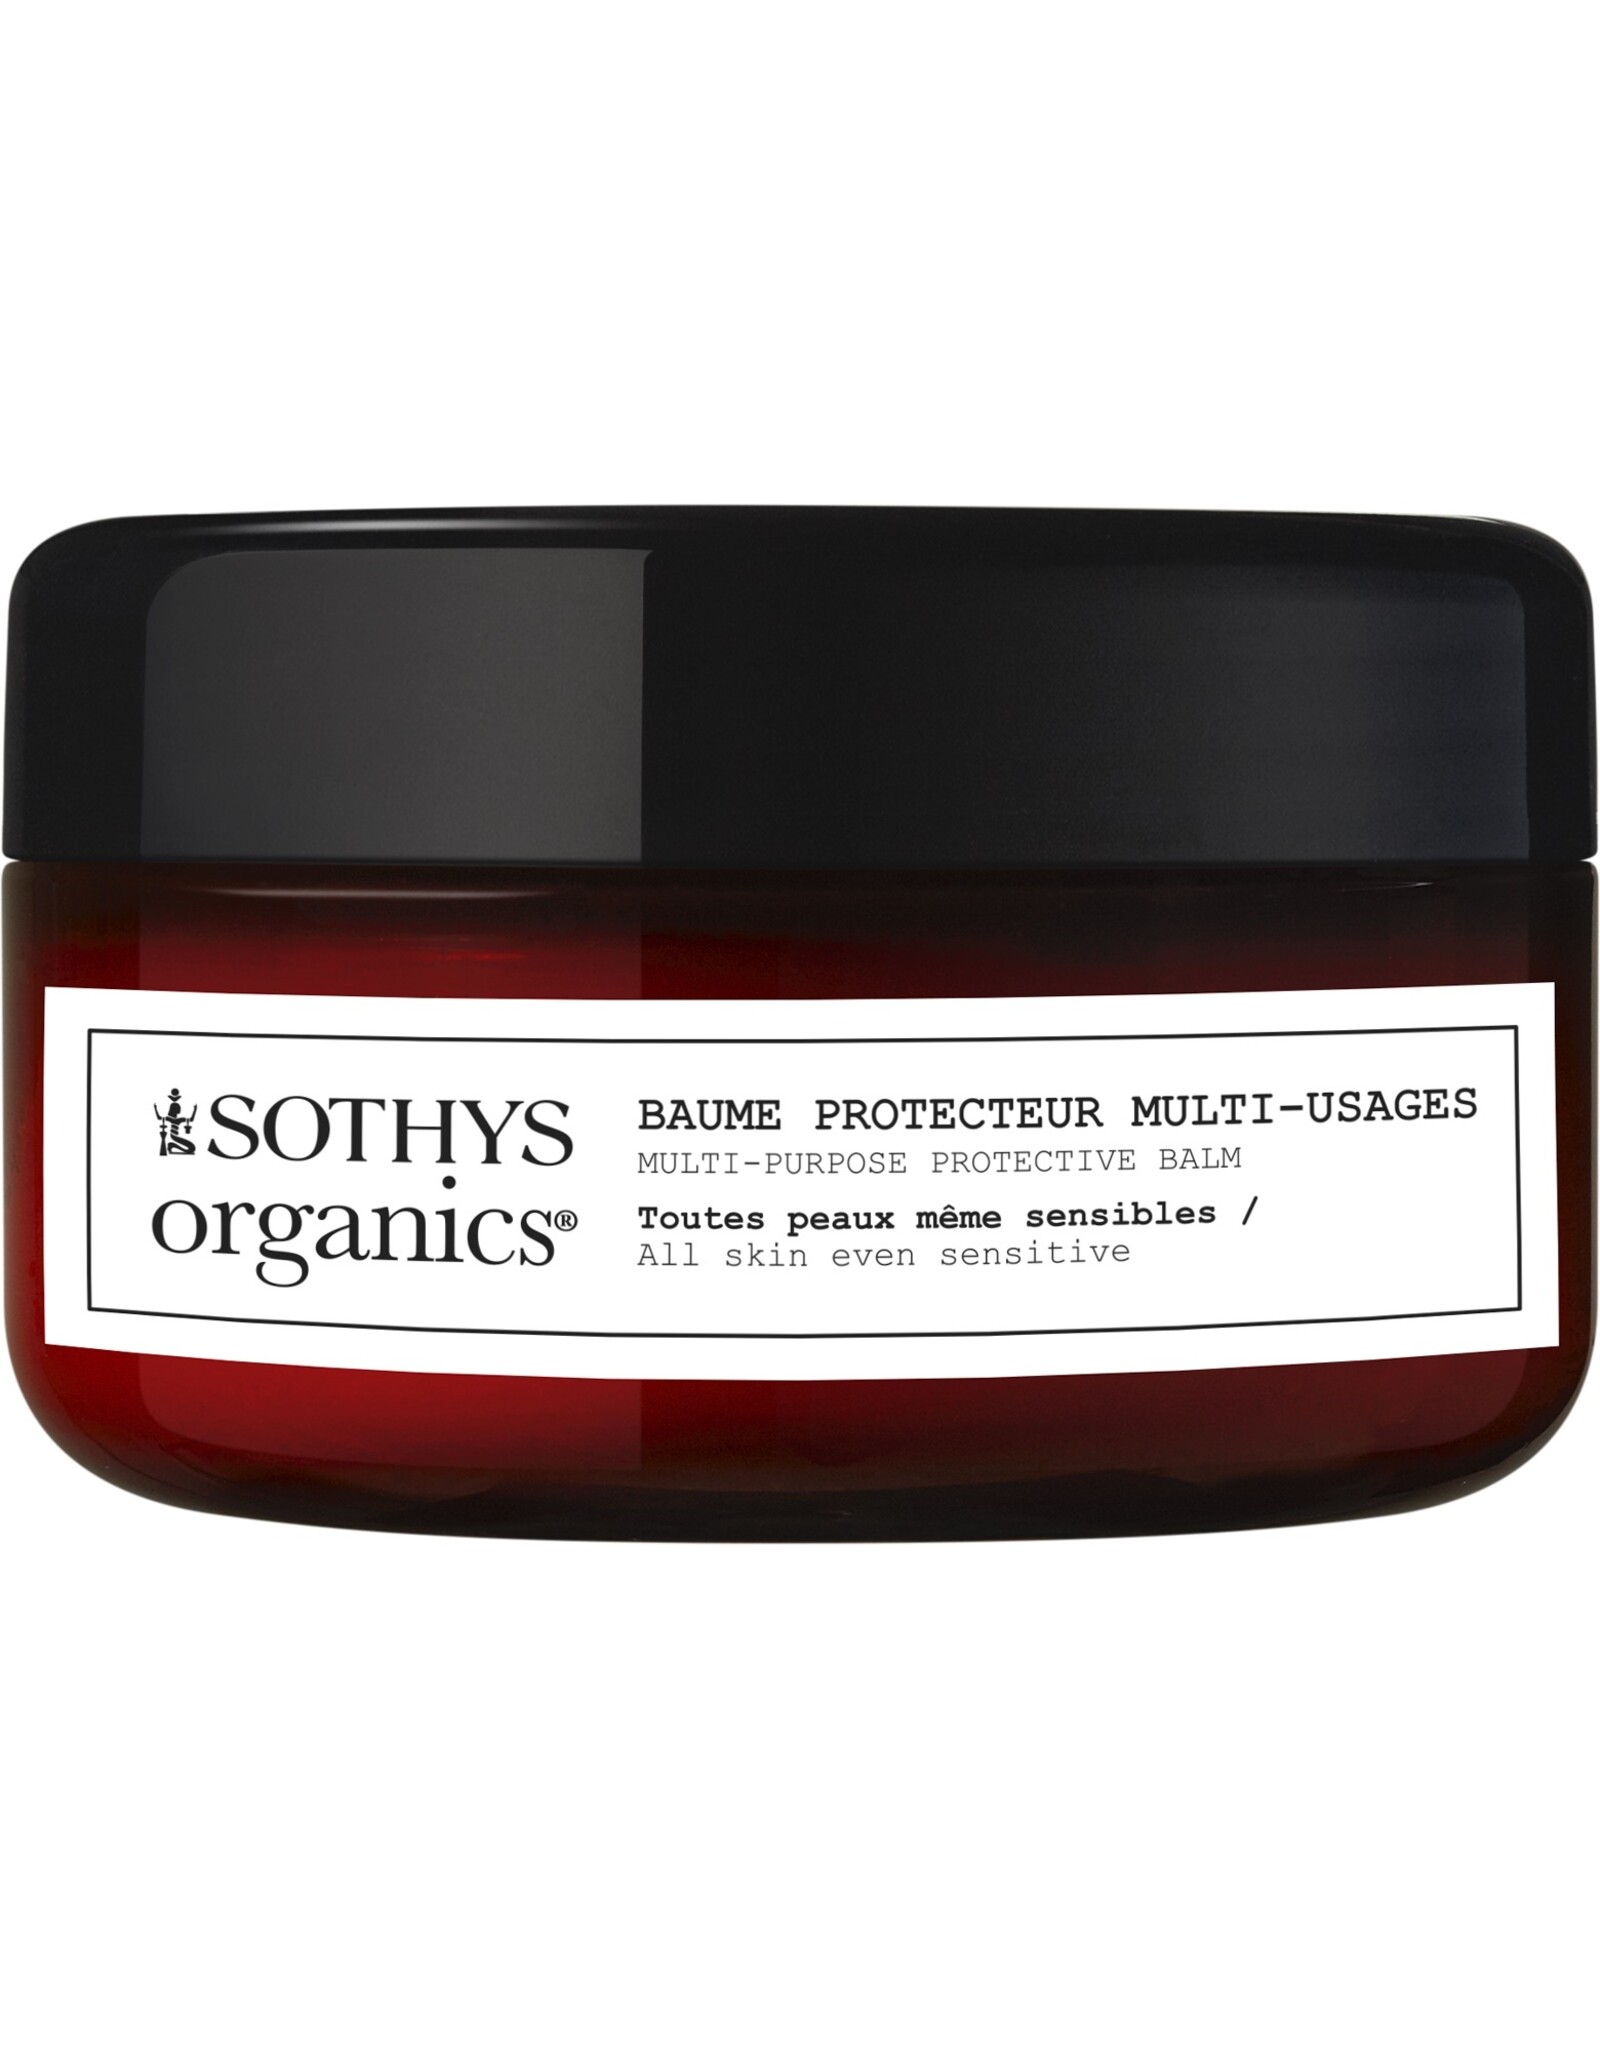 SOTHYS Baume protecteur multi-usages - Sothys Organics®